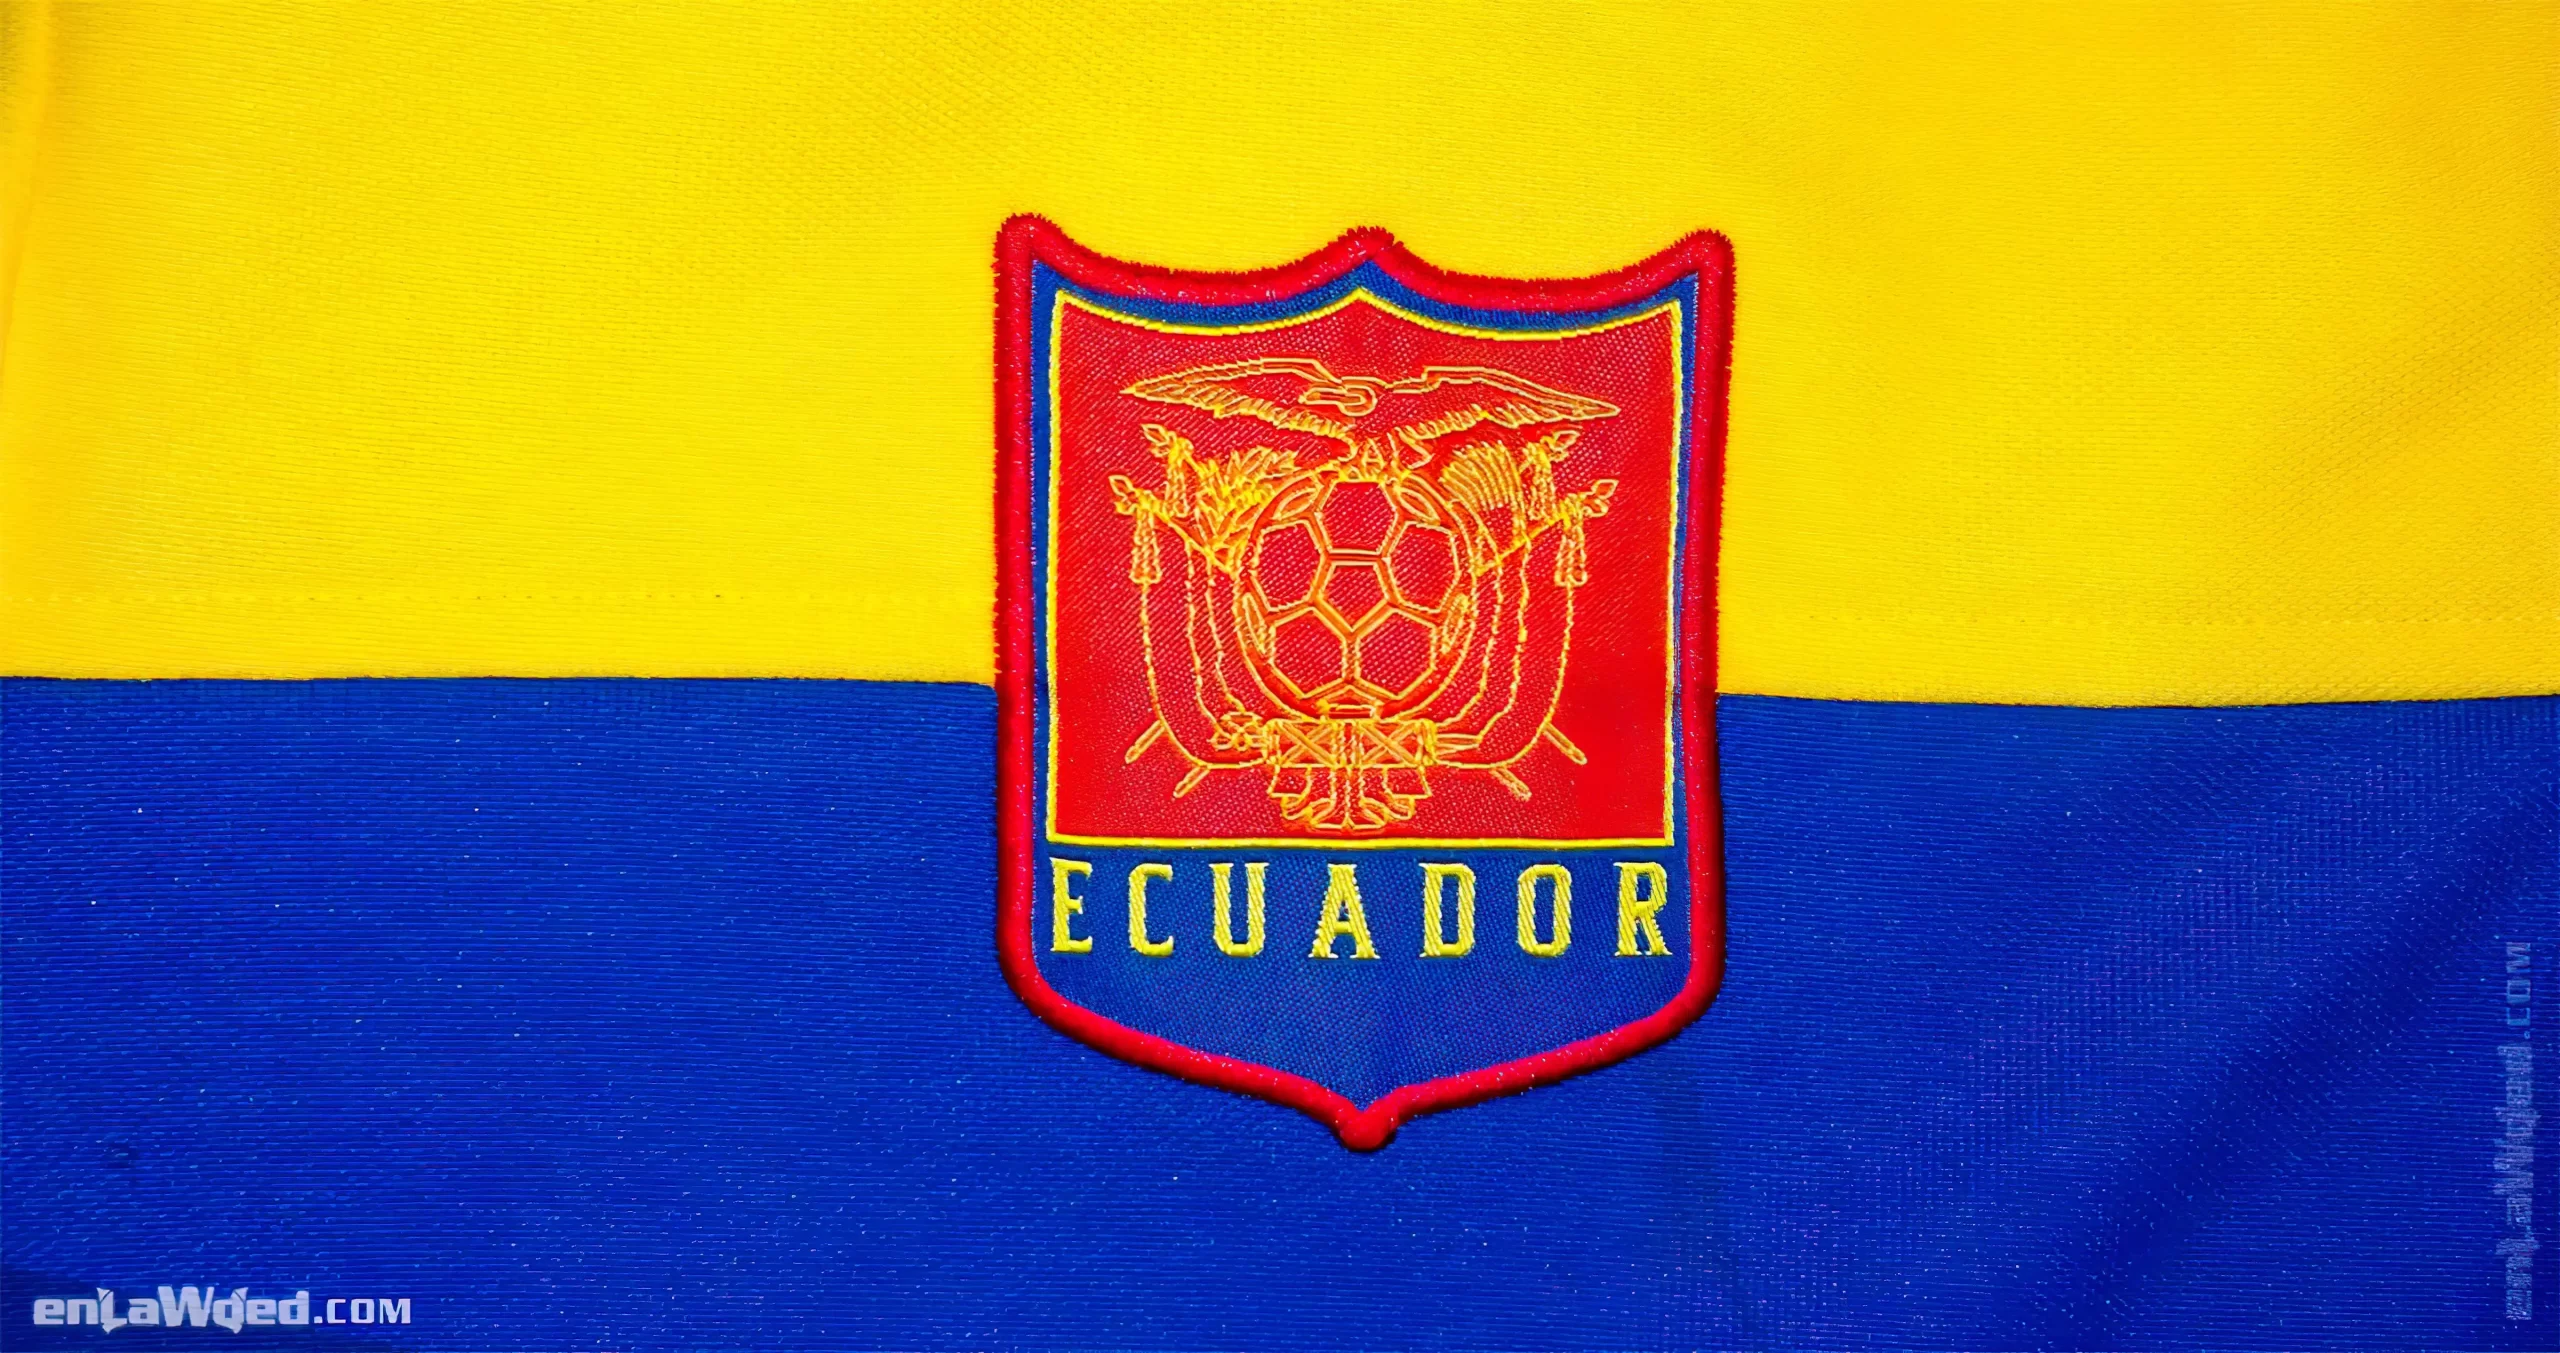 Men’s 2006 Ecuador Track Top by Adidas Originals: Superb (EnLawded.com file #lmchk90175ip2y121969kg9st)